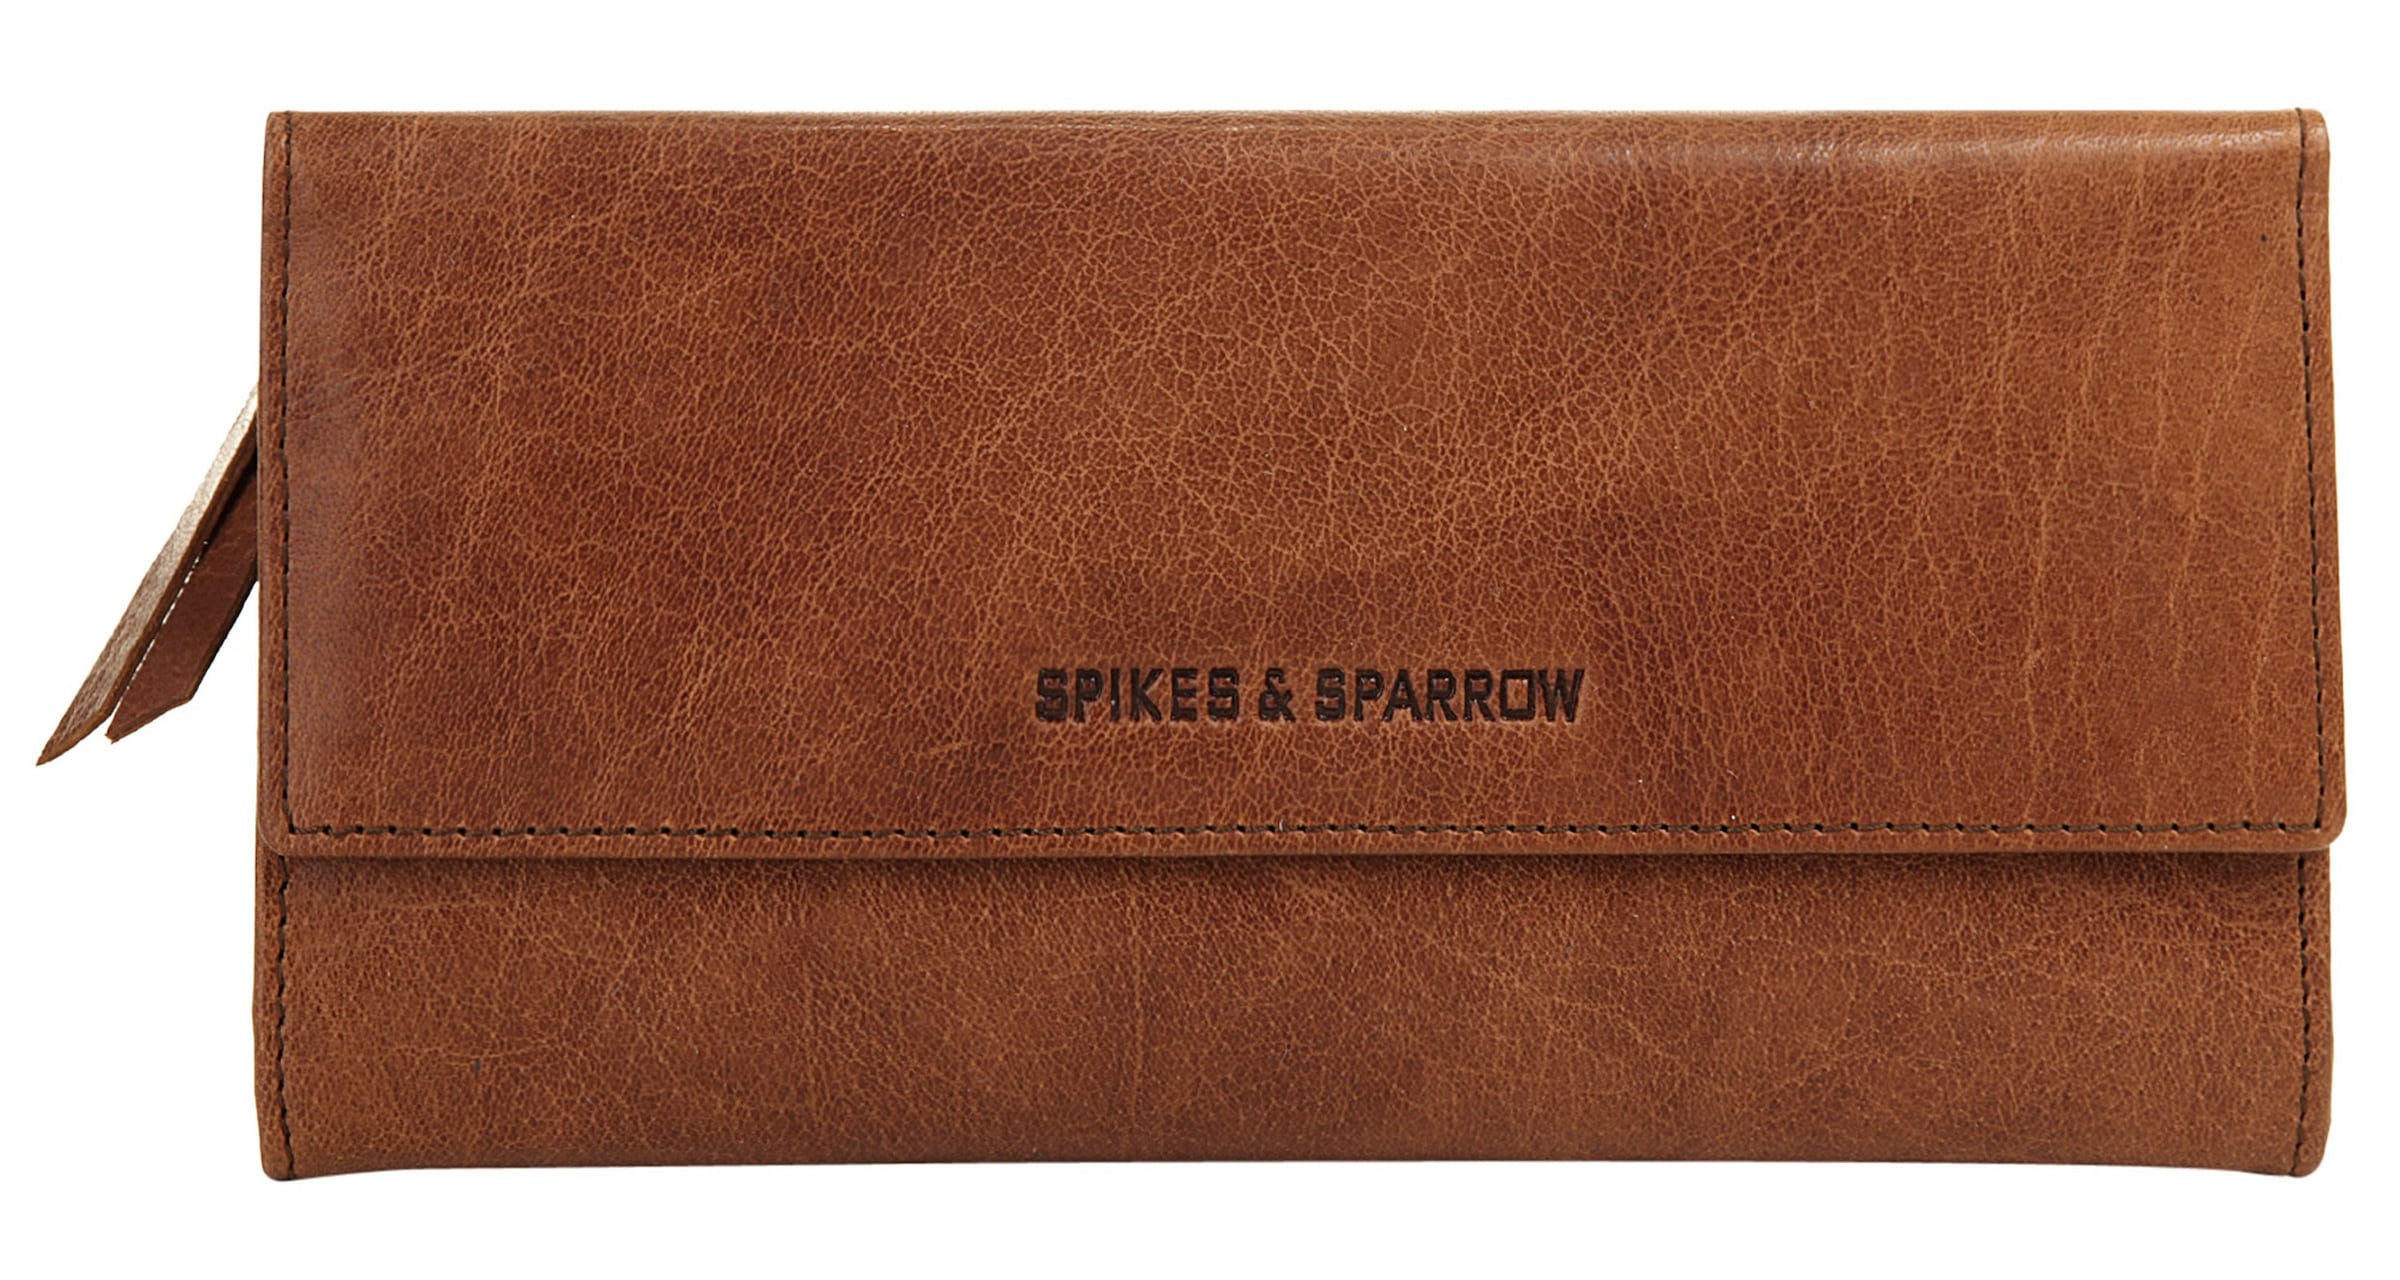 Spikes & Sparrow Geldbörse, echt Leder online kaufen